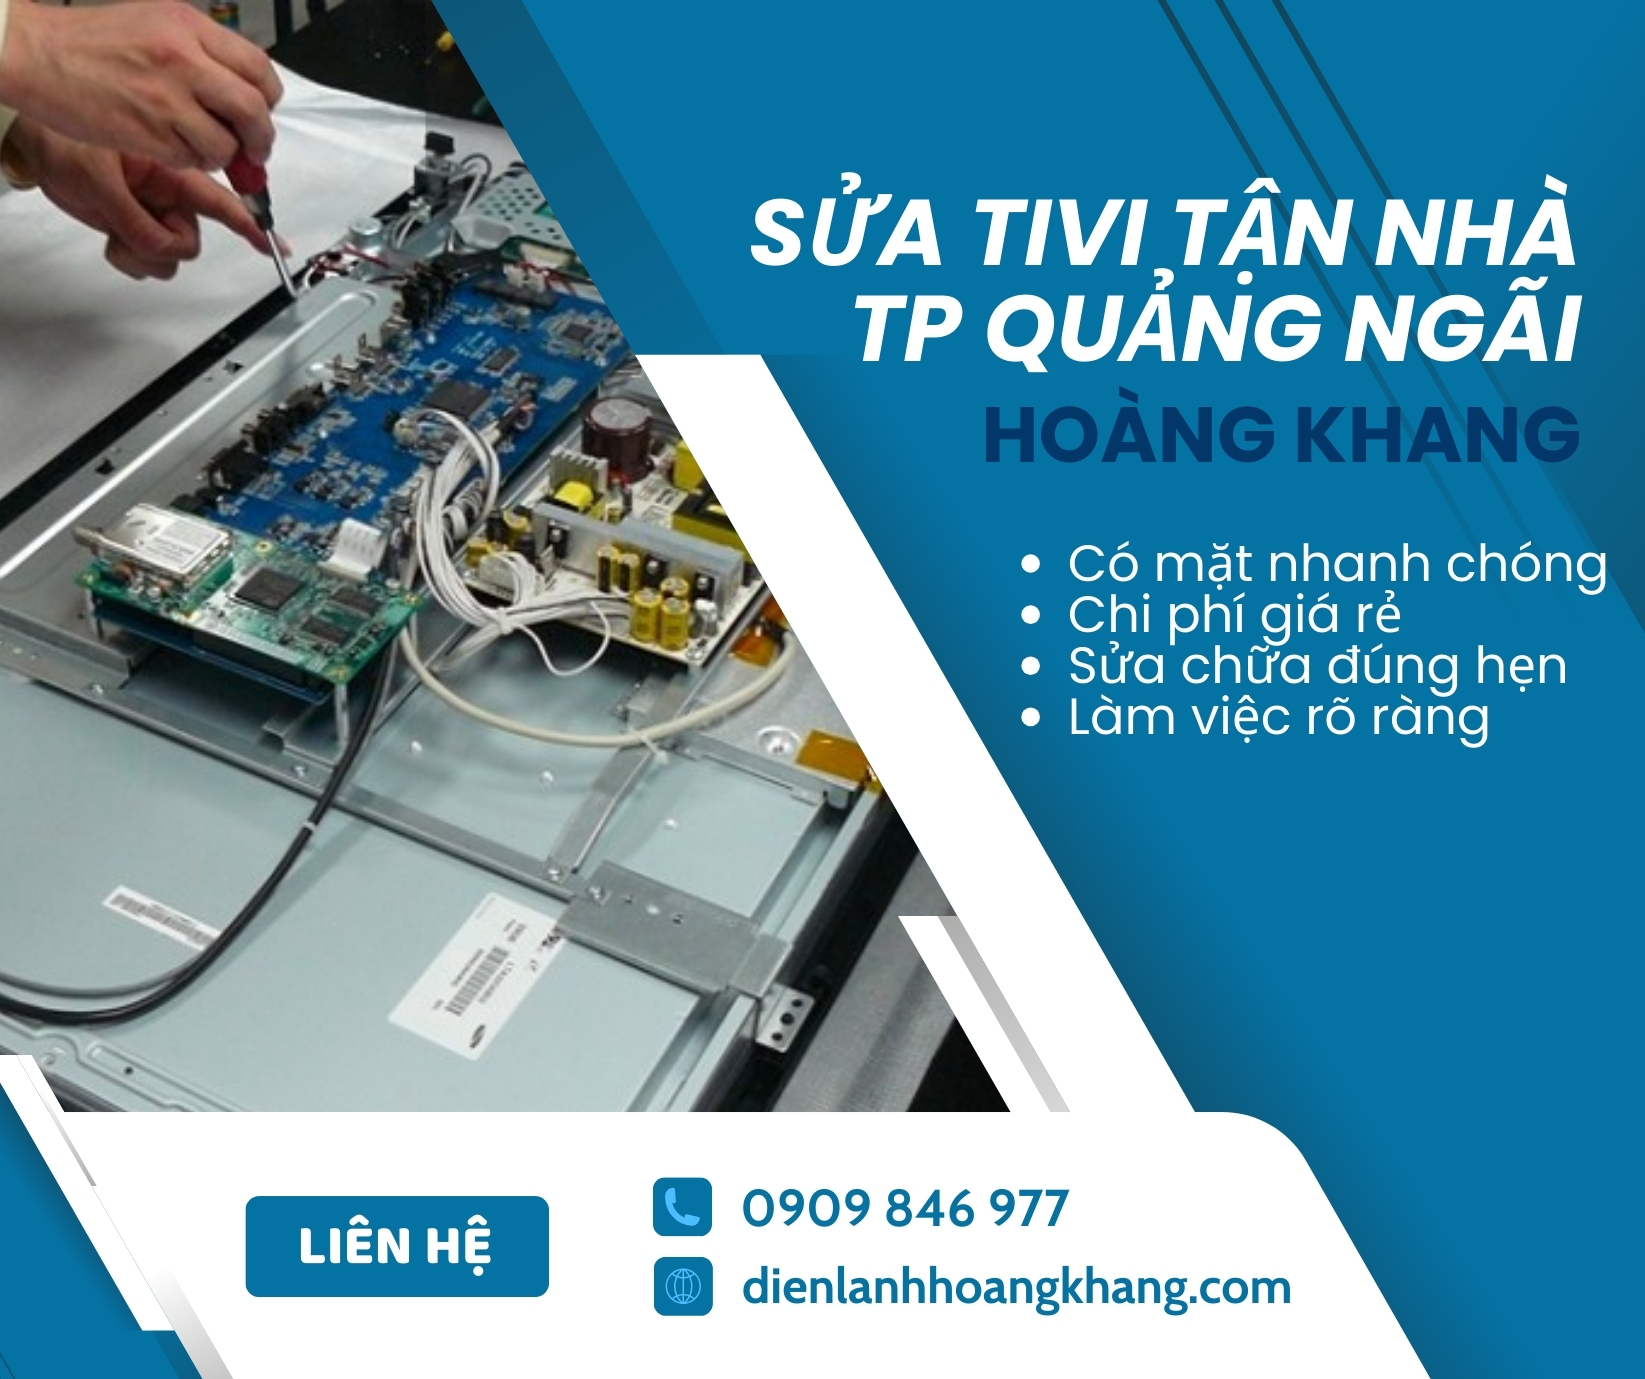 sửa chữa tivi tại Thành phố Quảng Ngãi